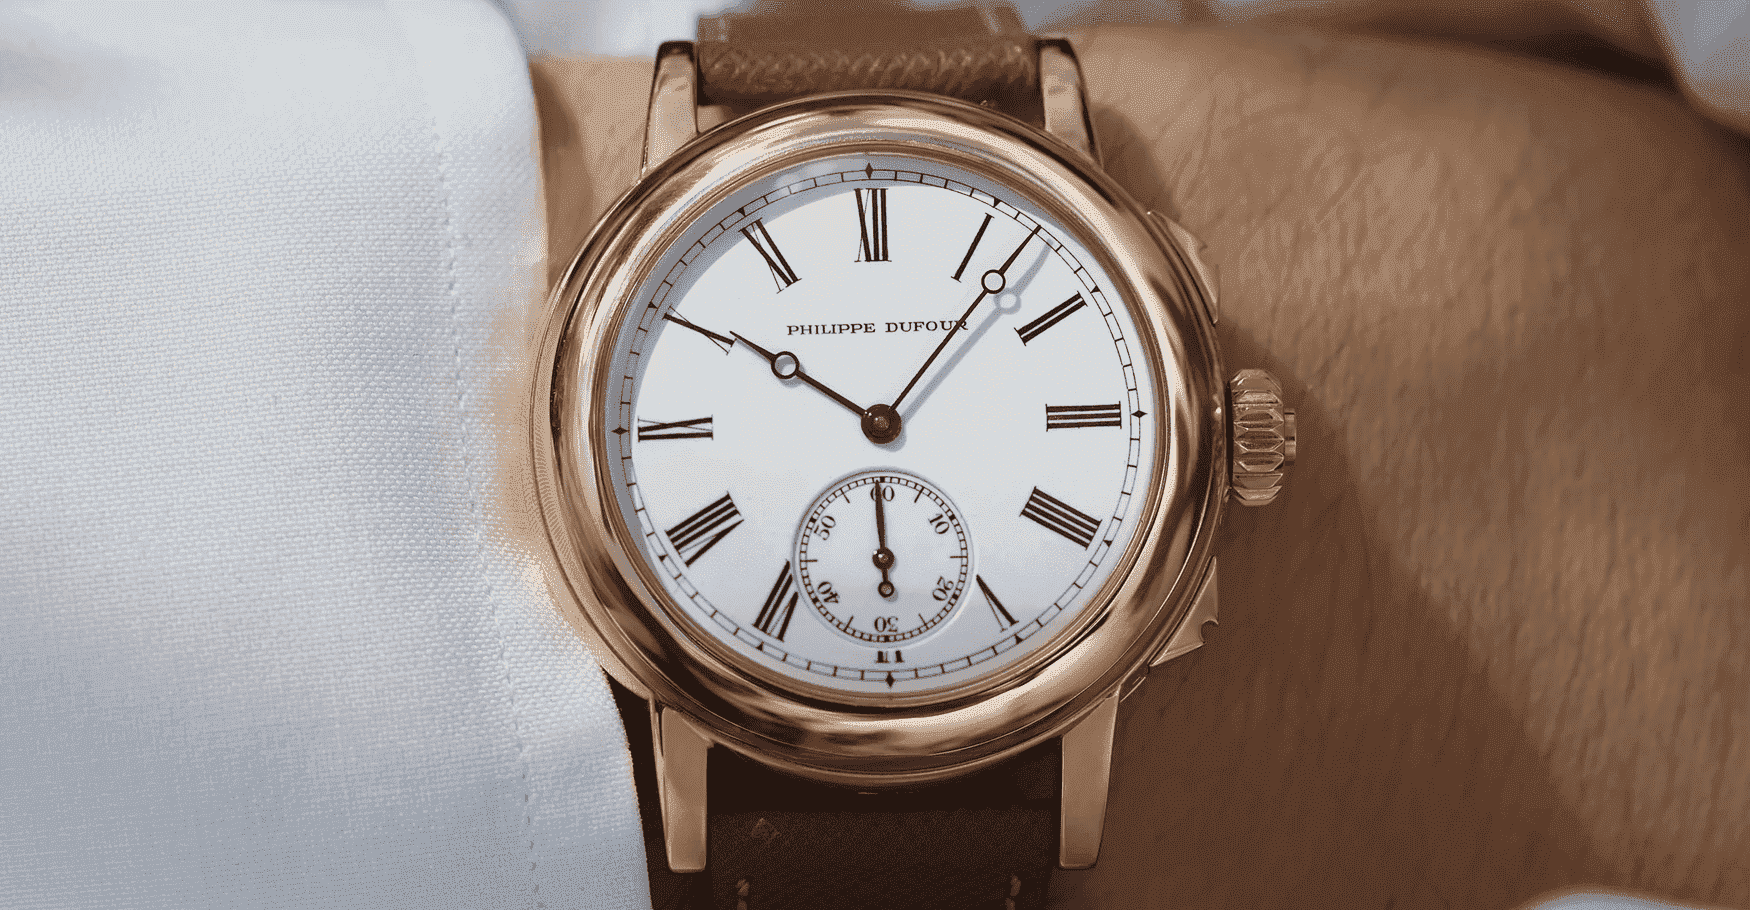 Old watches | Antique watches, Old watches, Watches